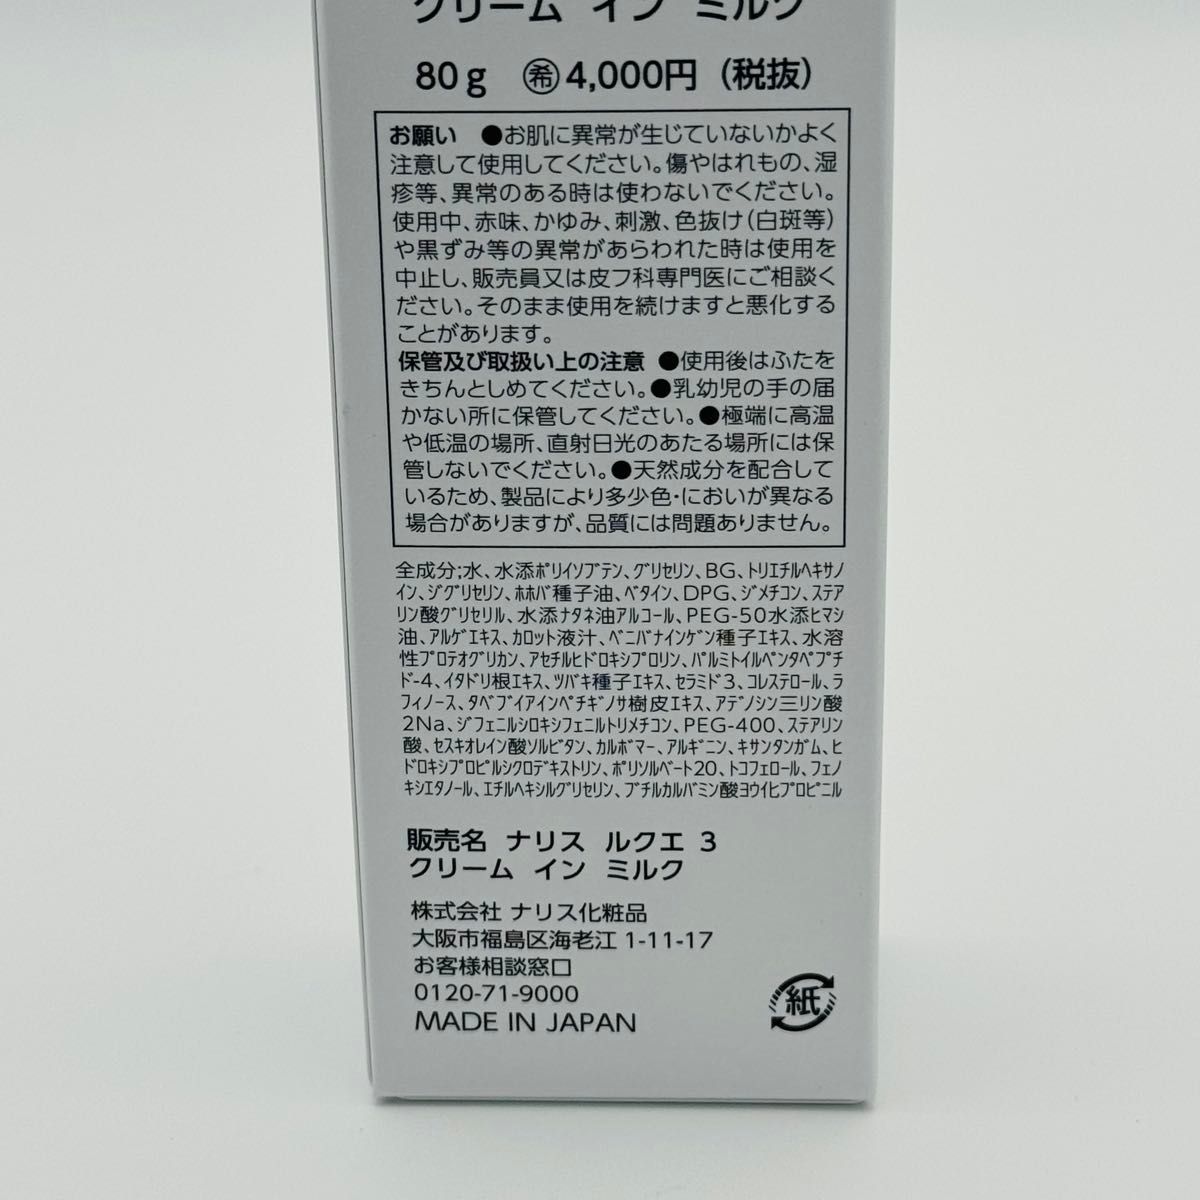 ナリス化粧品 ルクエ 3 クリーム イン ミルク (濃密乳液) 80g 2本